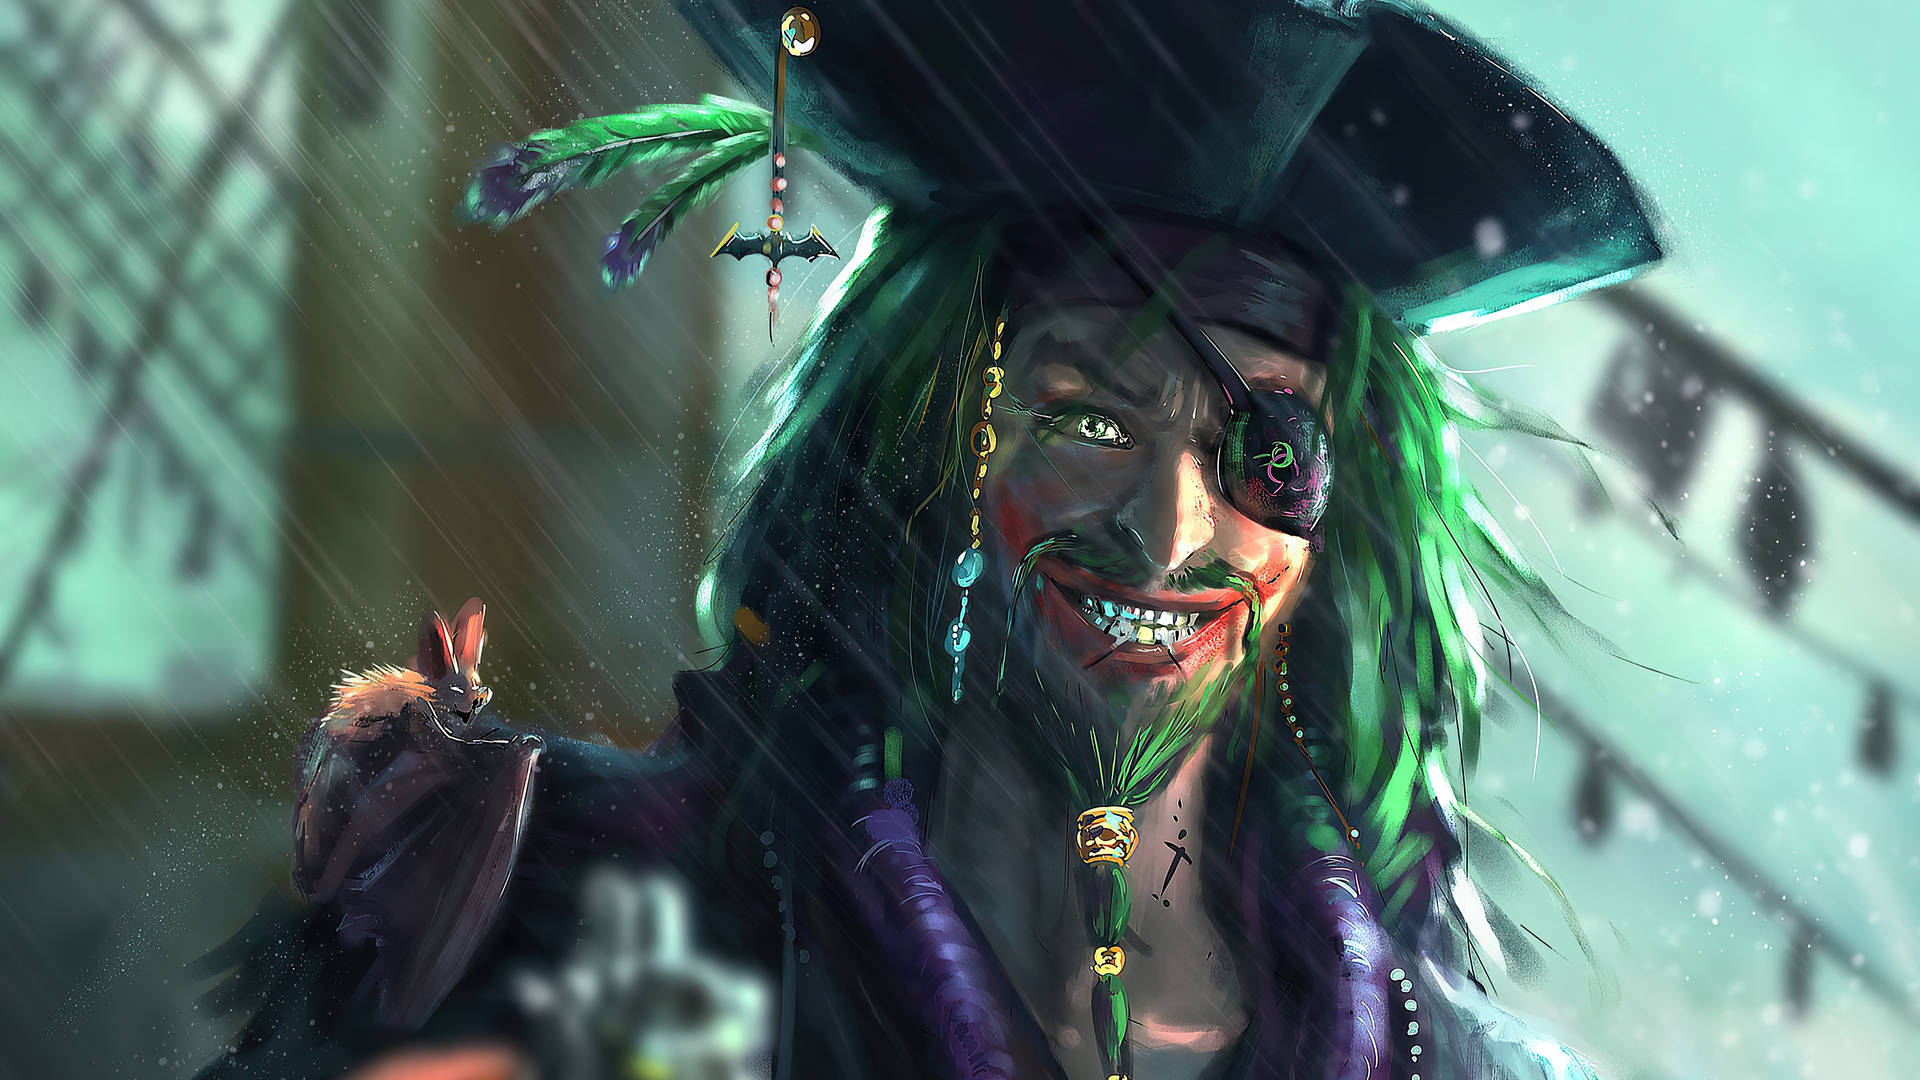 4k Pirate Captain Joker Wallpaper